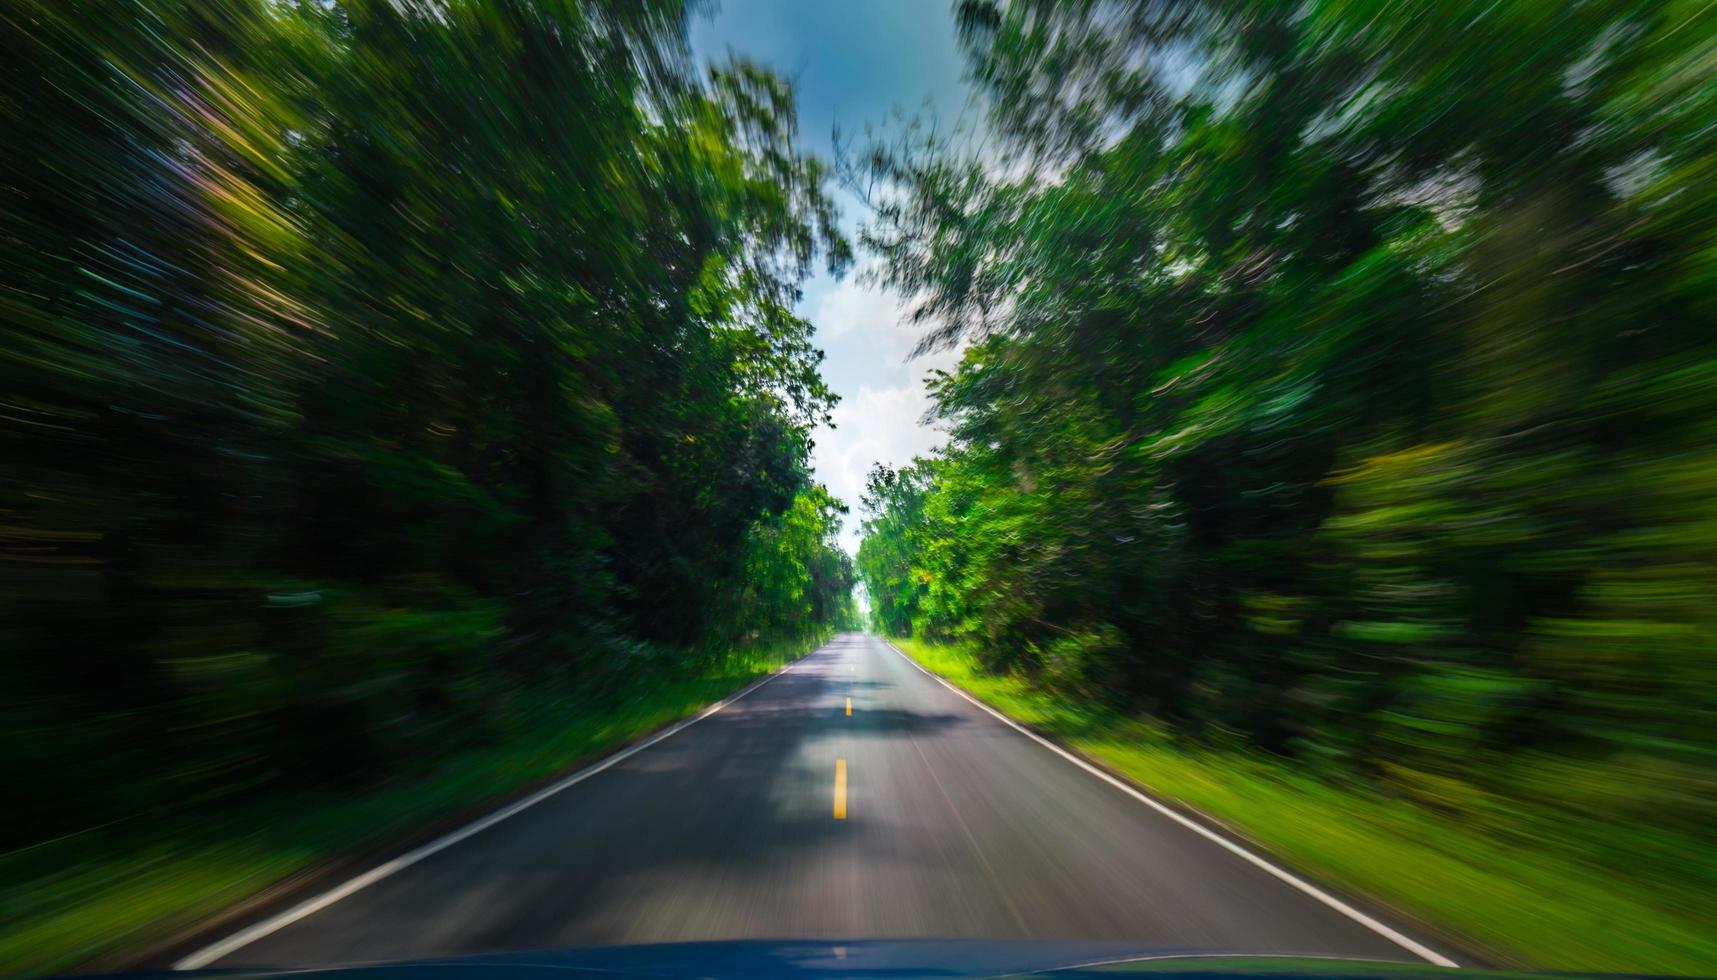 vista da frente do carro azul na estrada de asfalto e borrão de movimento de velocidade na estrada no verão com floresta de árvores verdes na zona rural foto